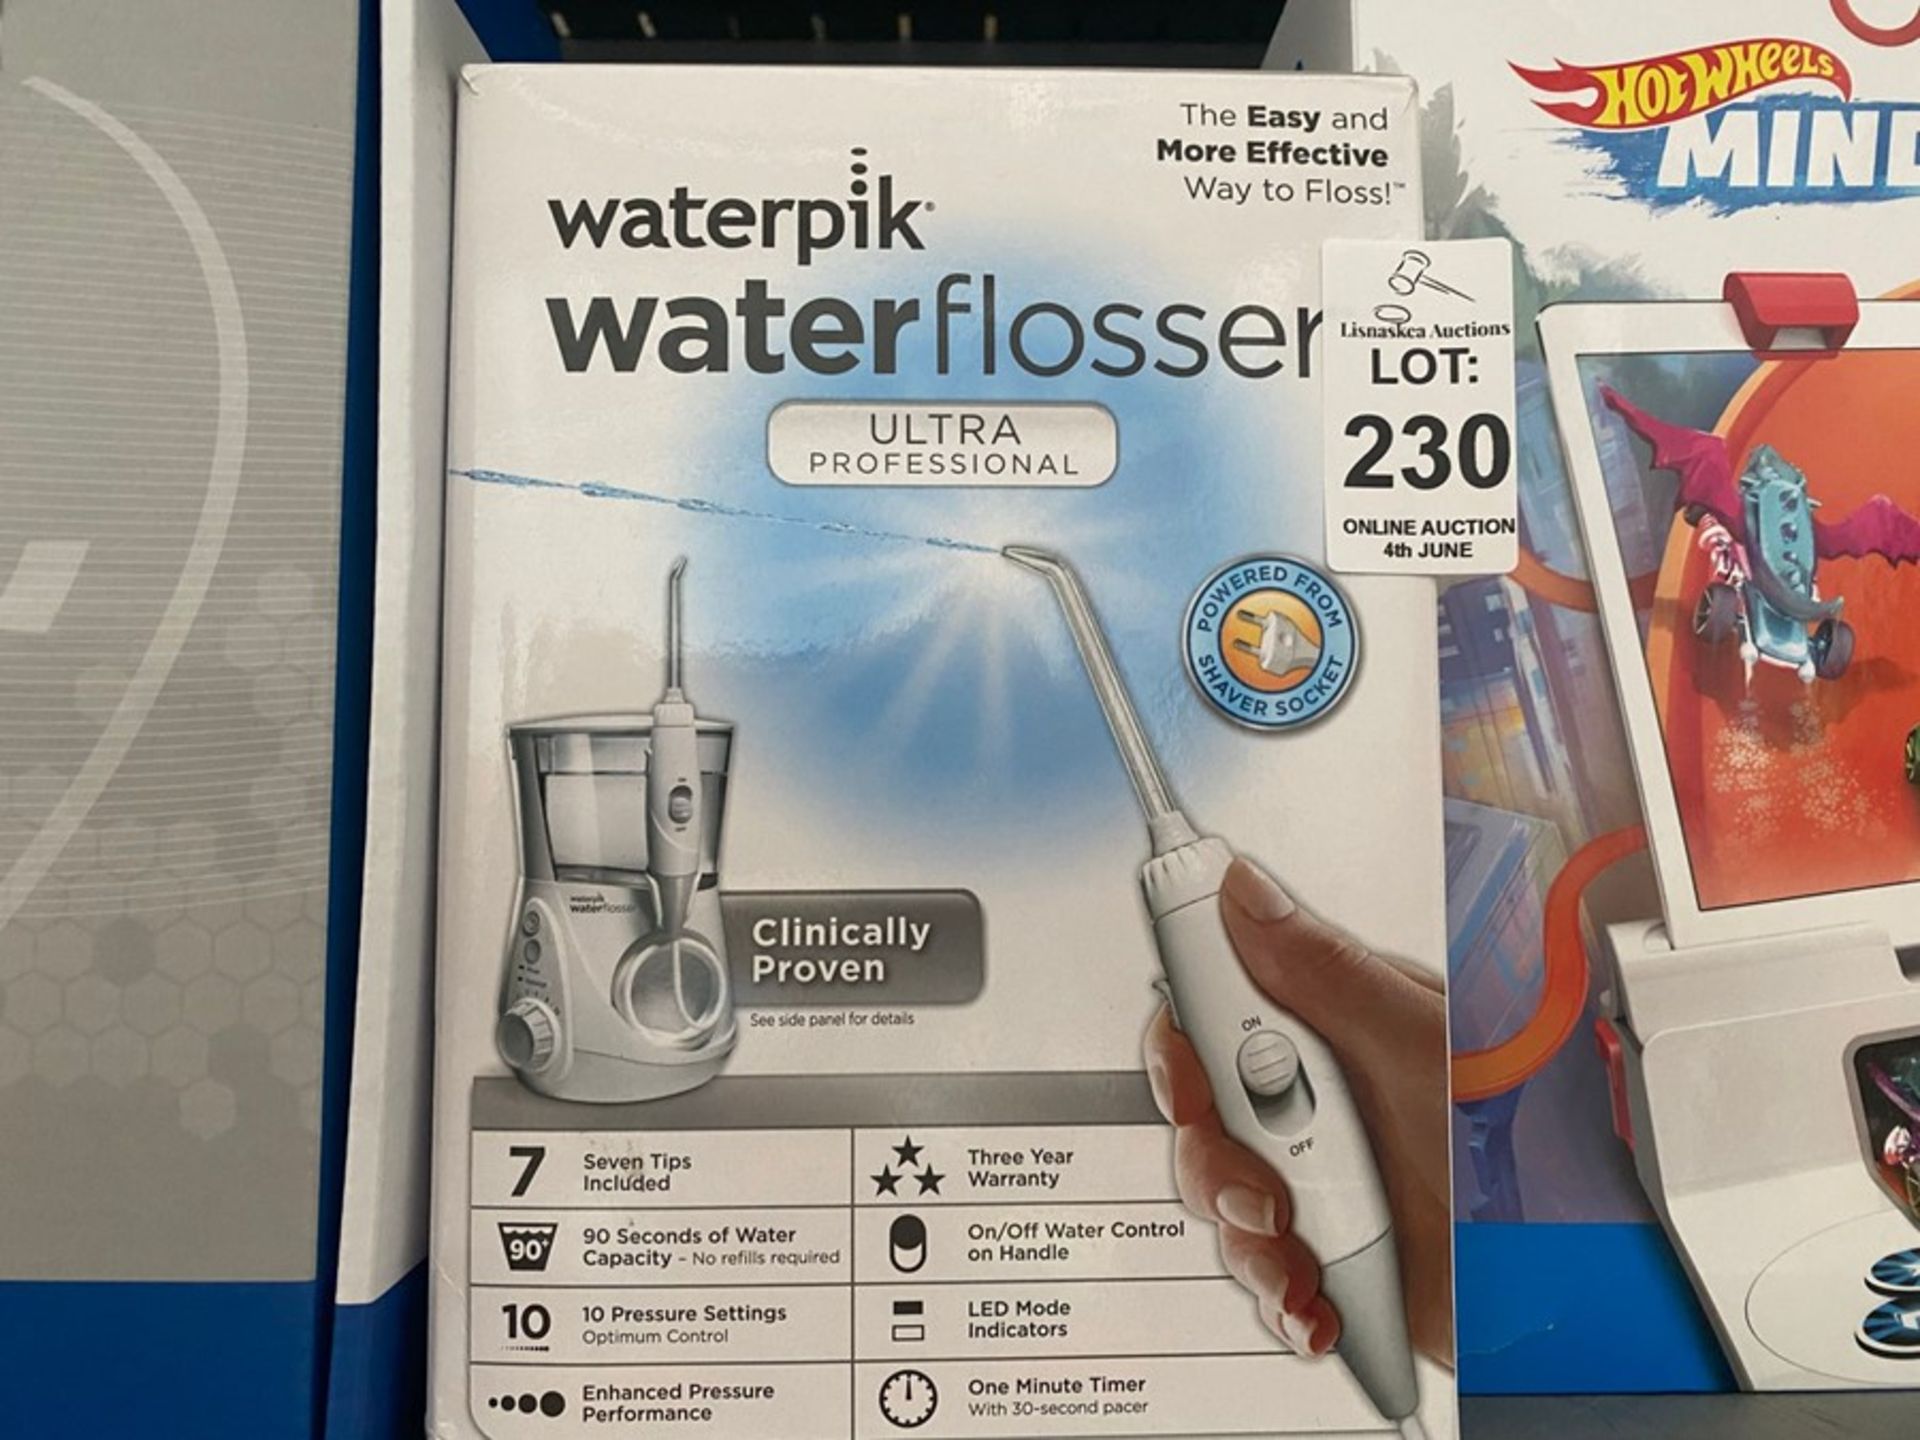 WATERPIK WATERFLOSSER ULTRA PROFESSIONAL CLEANER